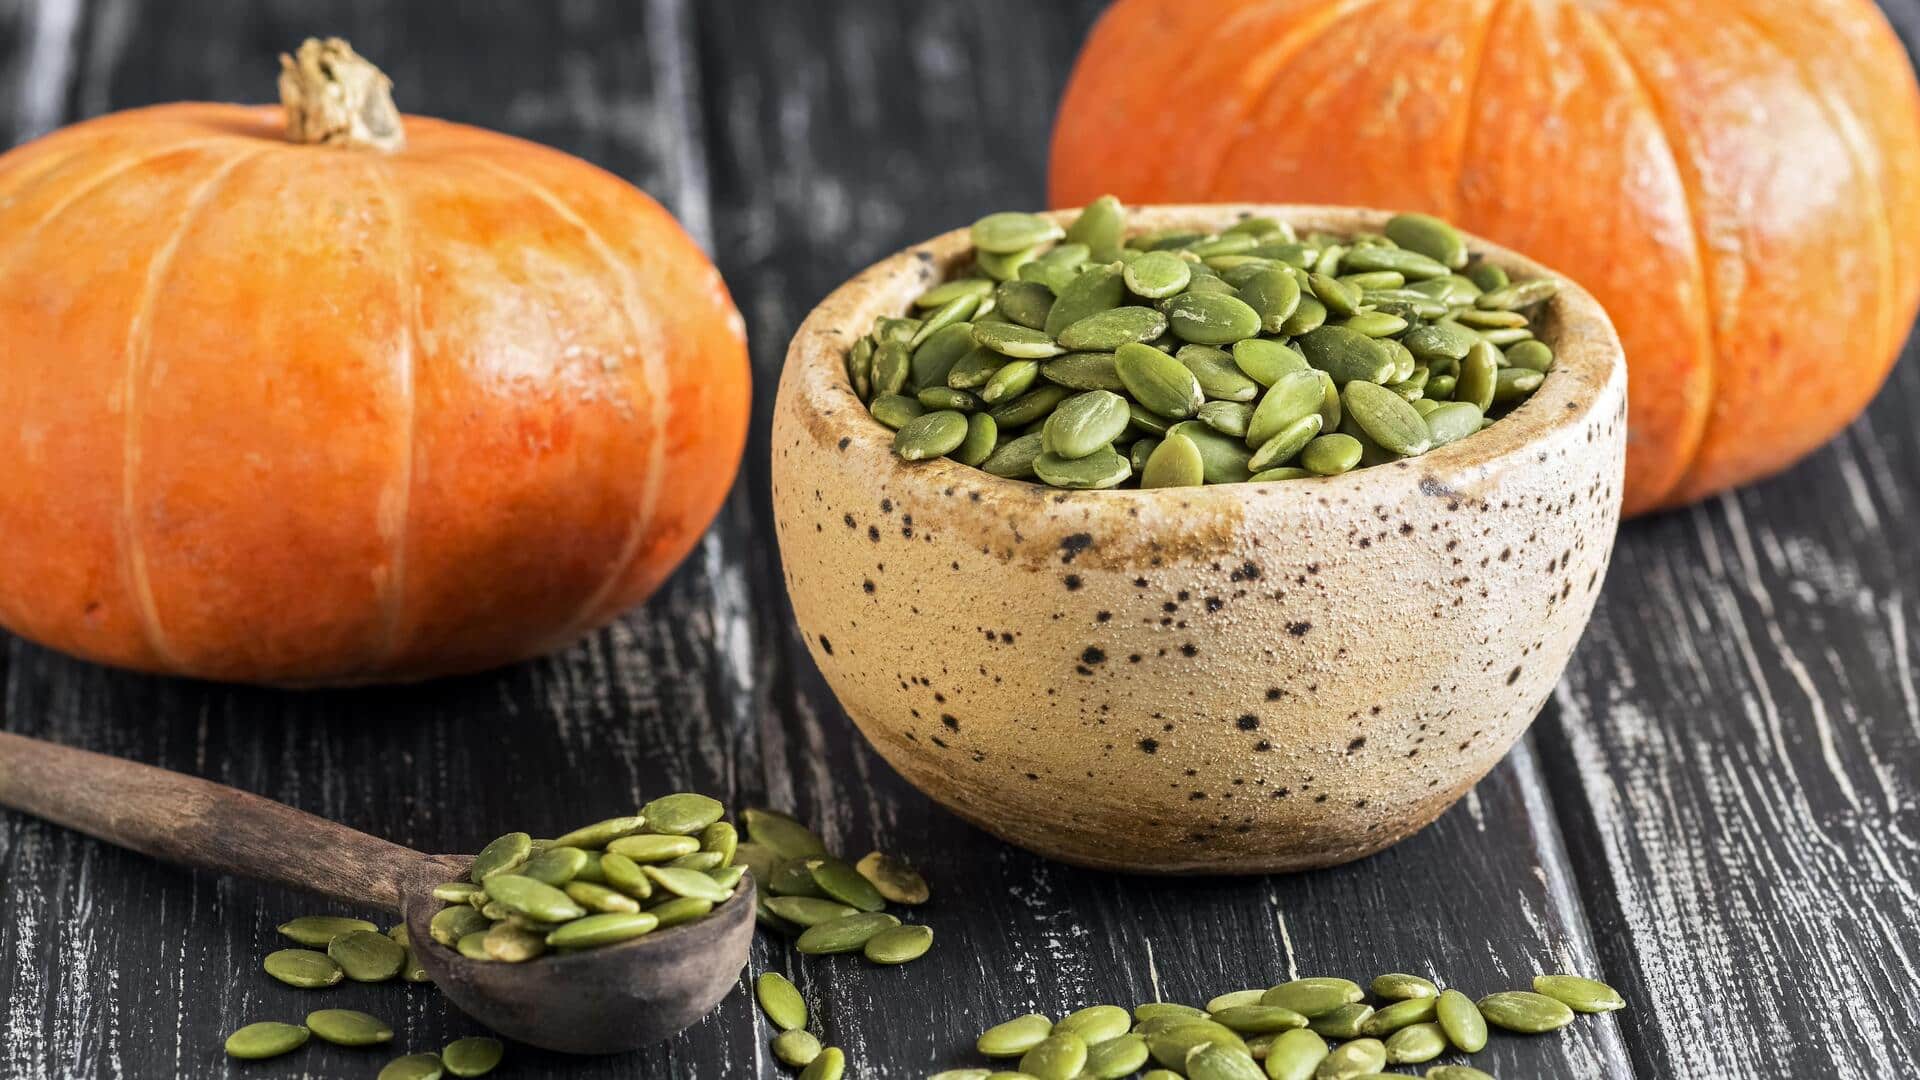 What's inside 100g of pumpkin seeds